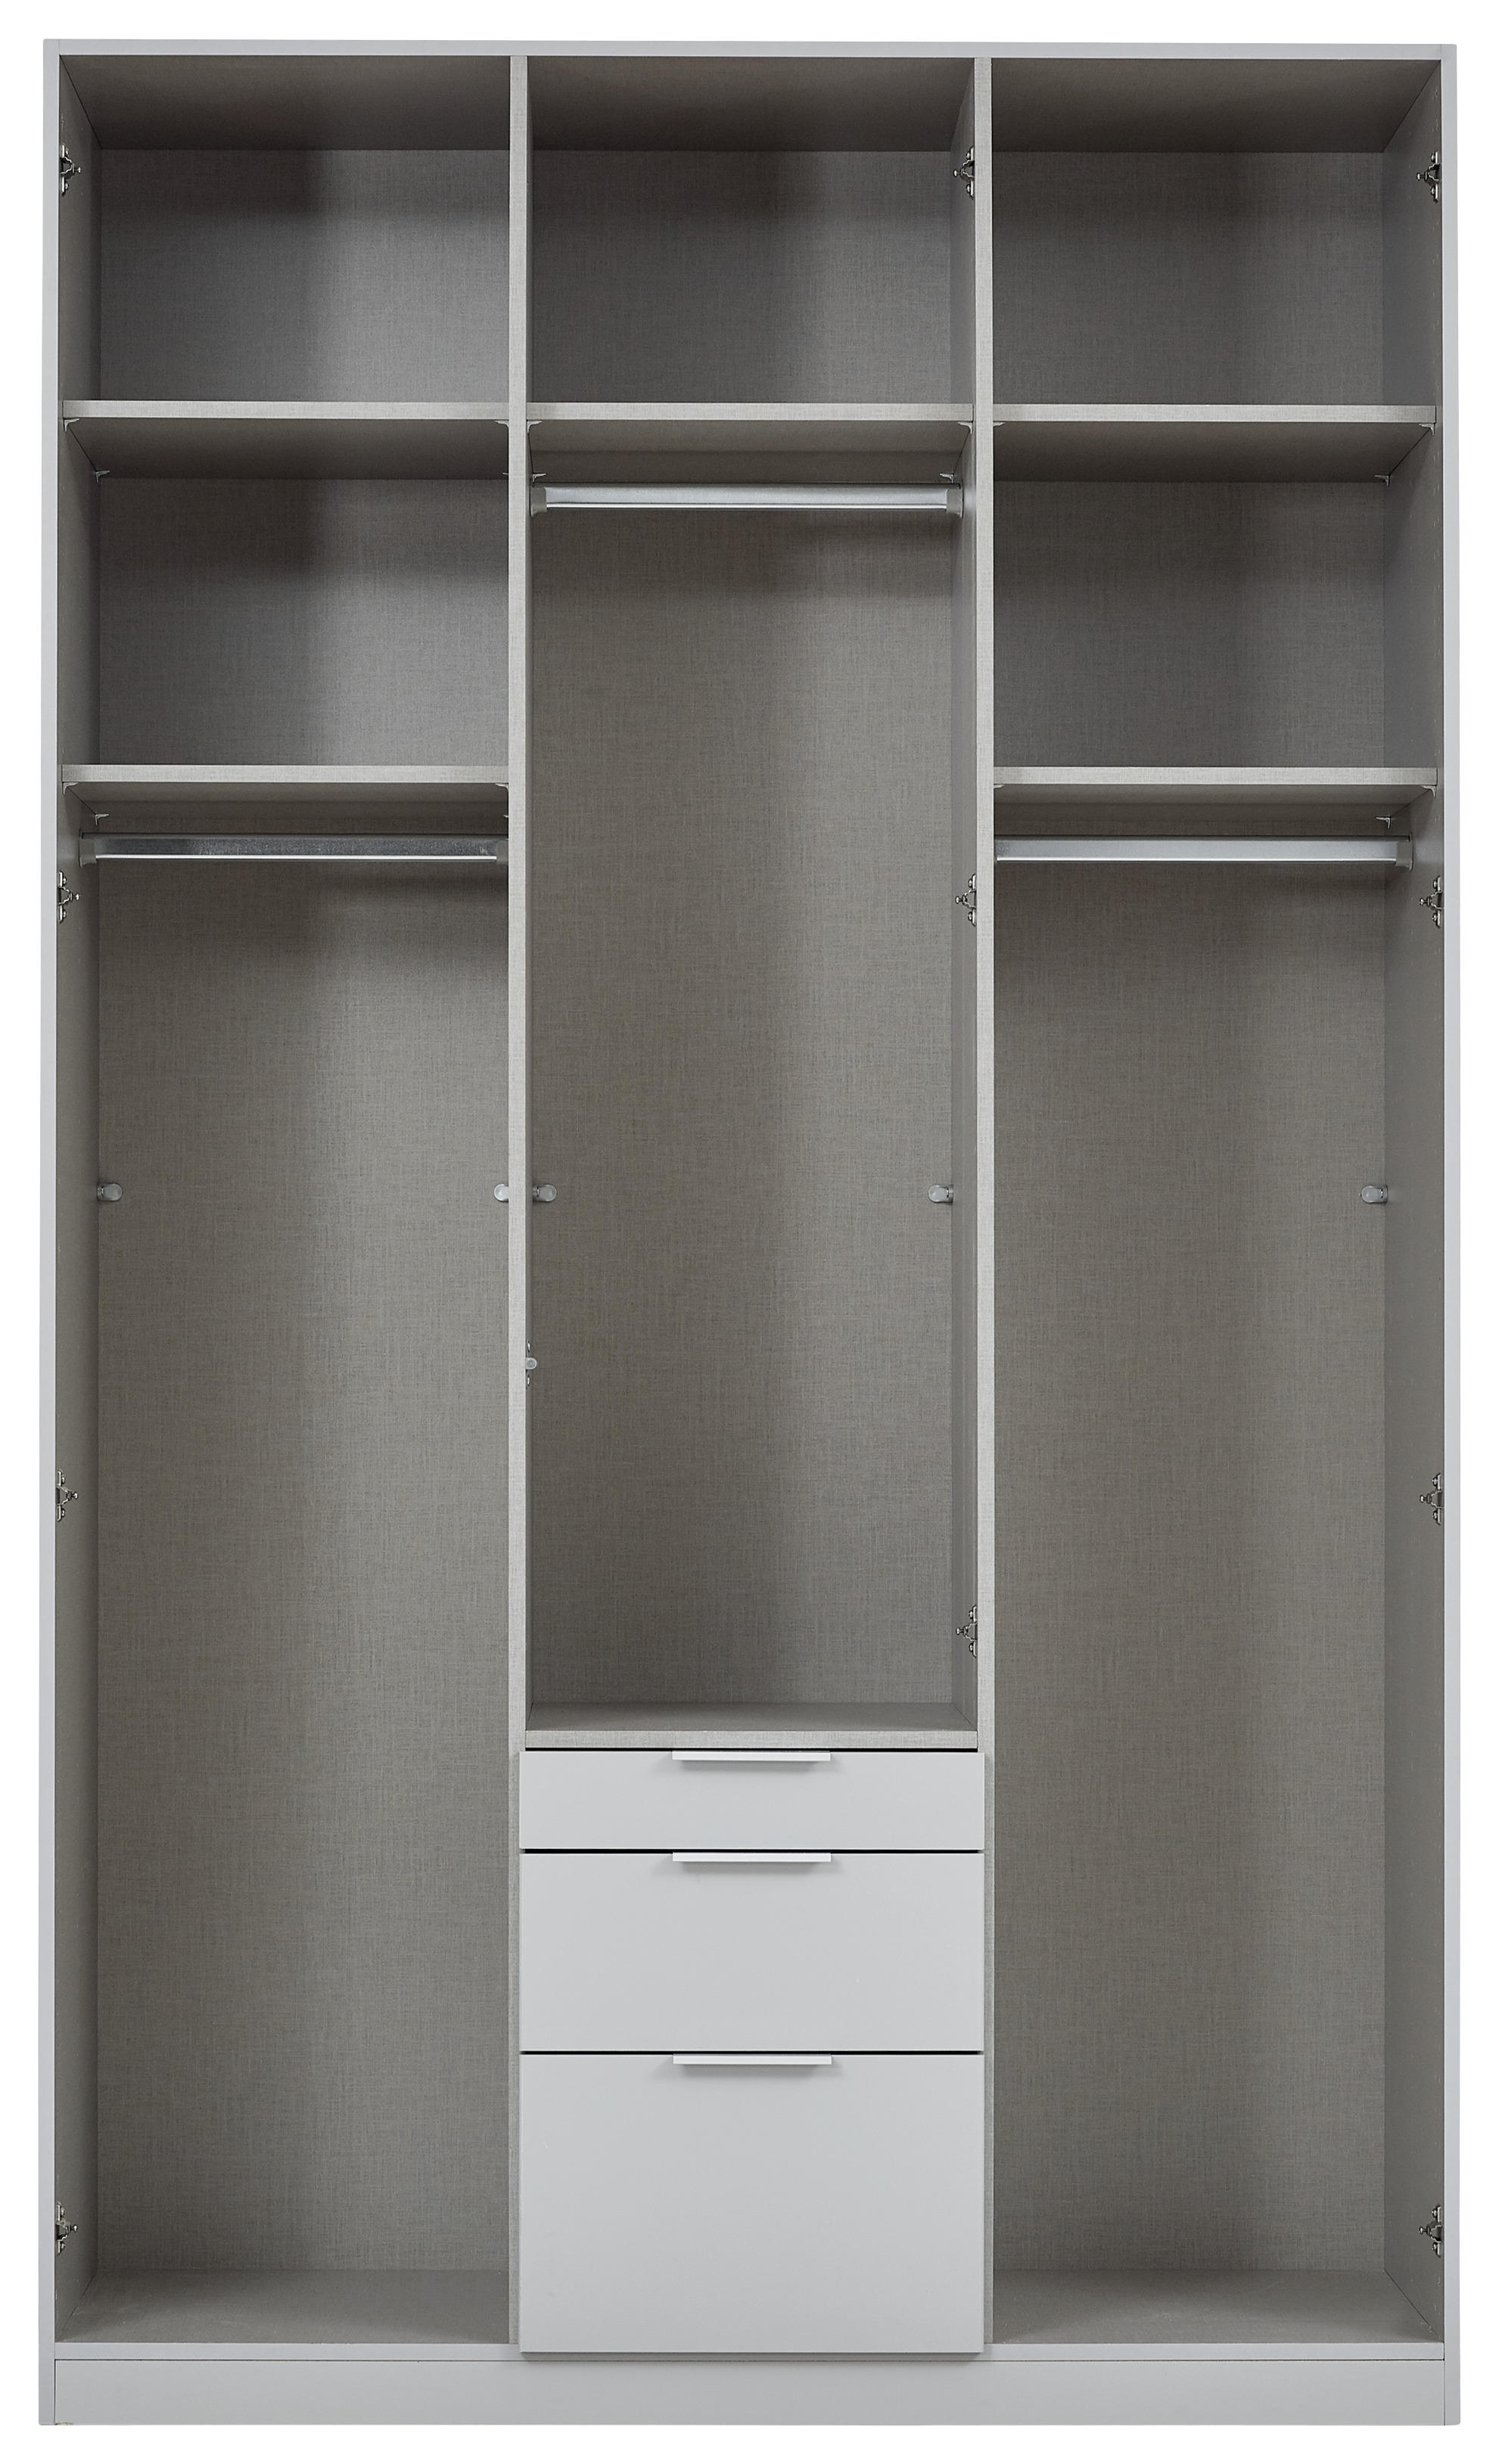 GARDEROB grå  - alufärgad/grå, Modern, metall/träbaserade material (136/229/54cm) - MID.YOU